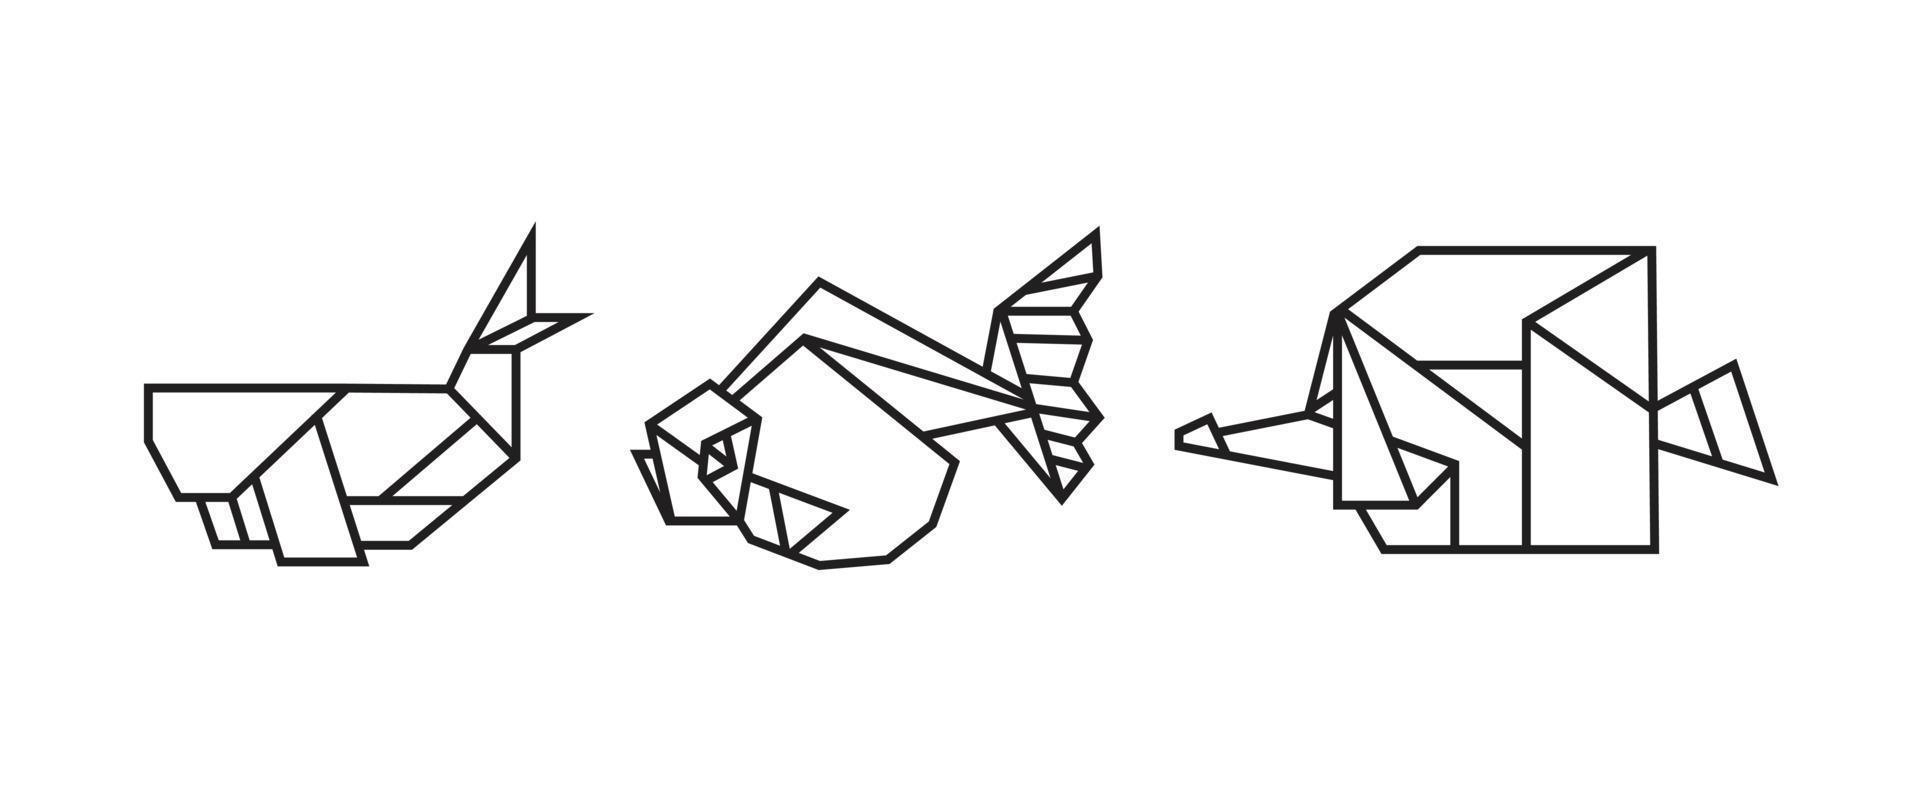 illustrations de poissons dans un style origami vecteur